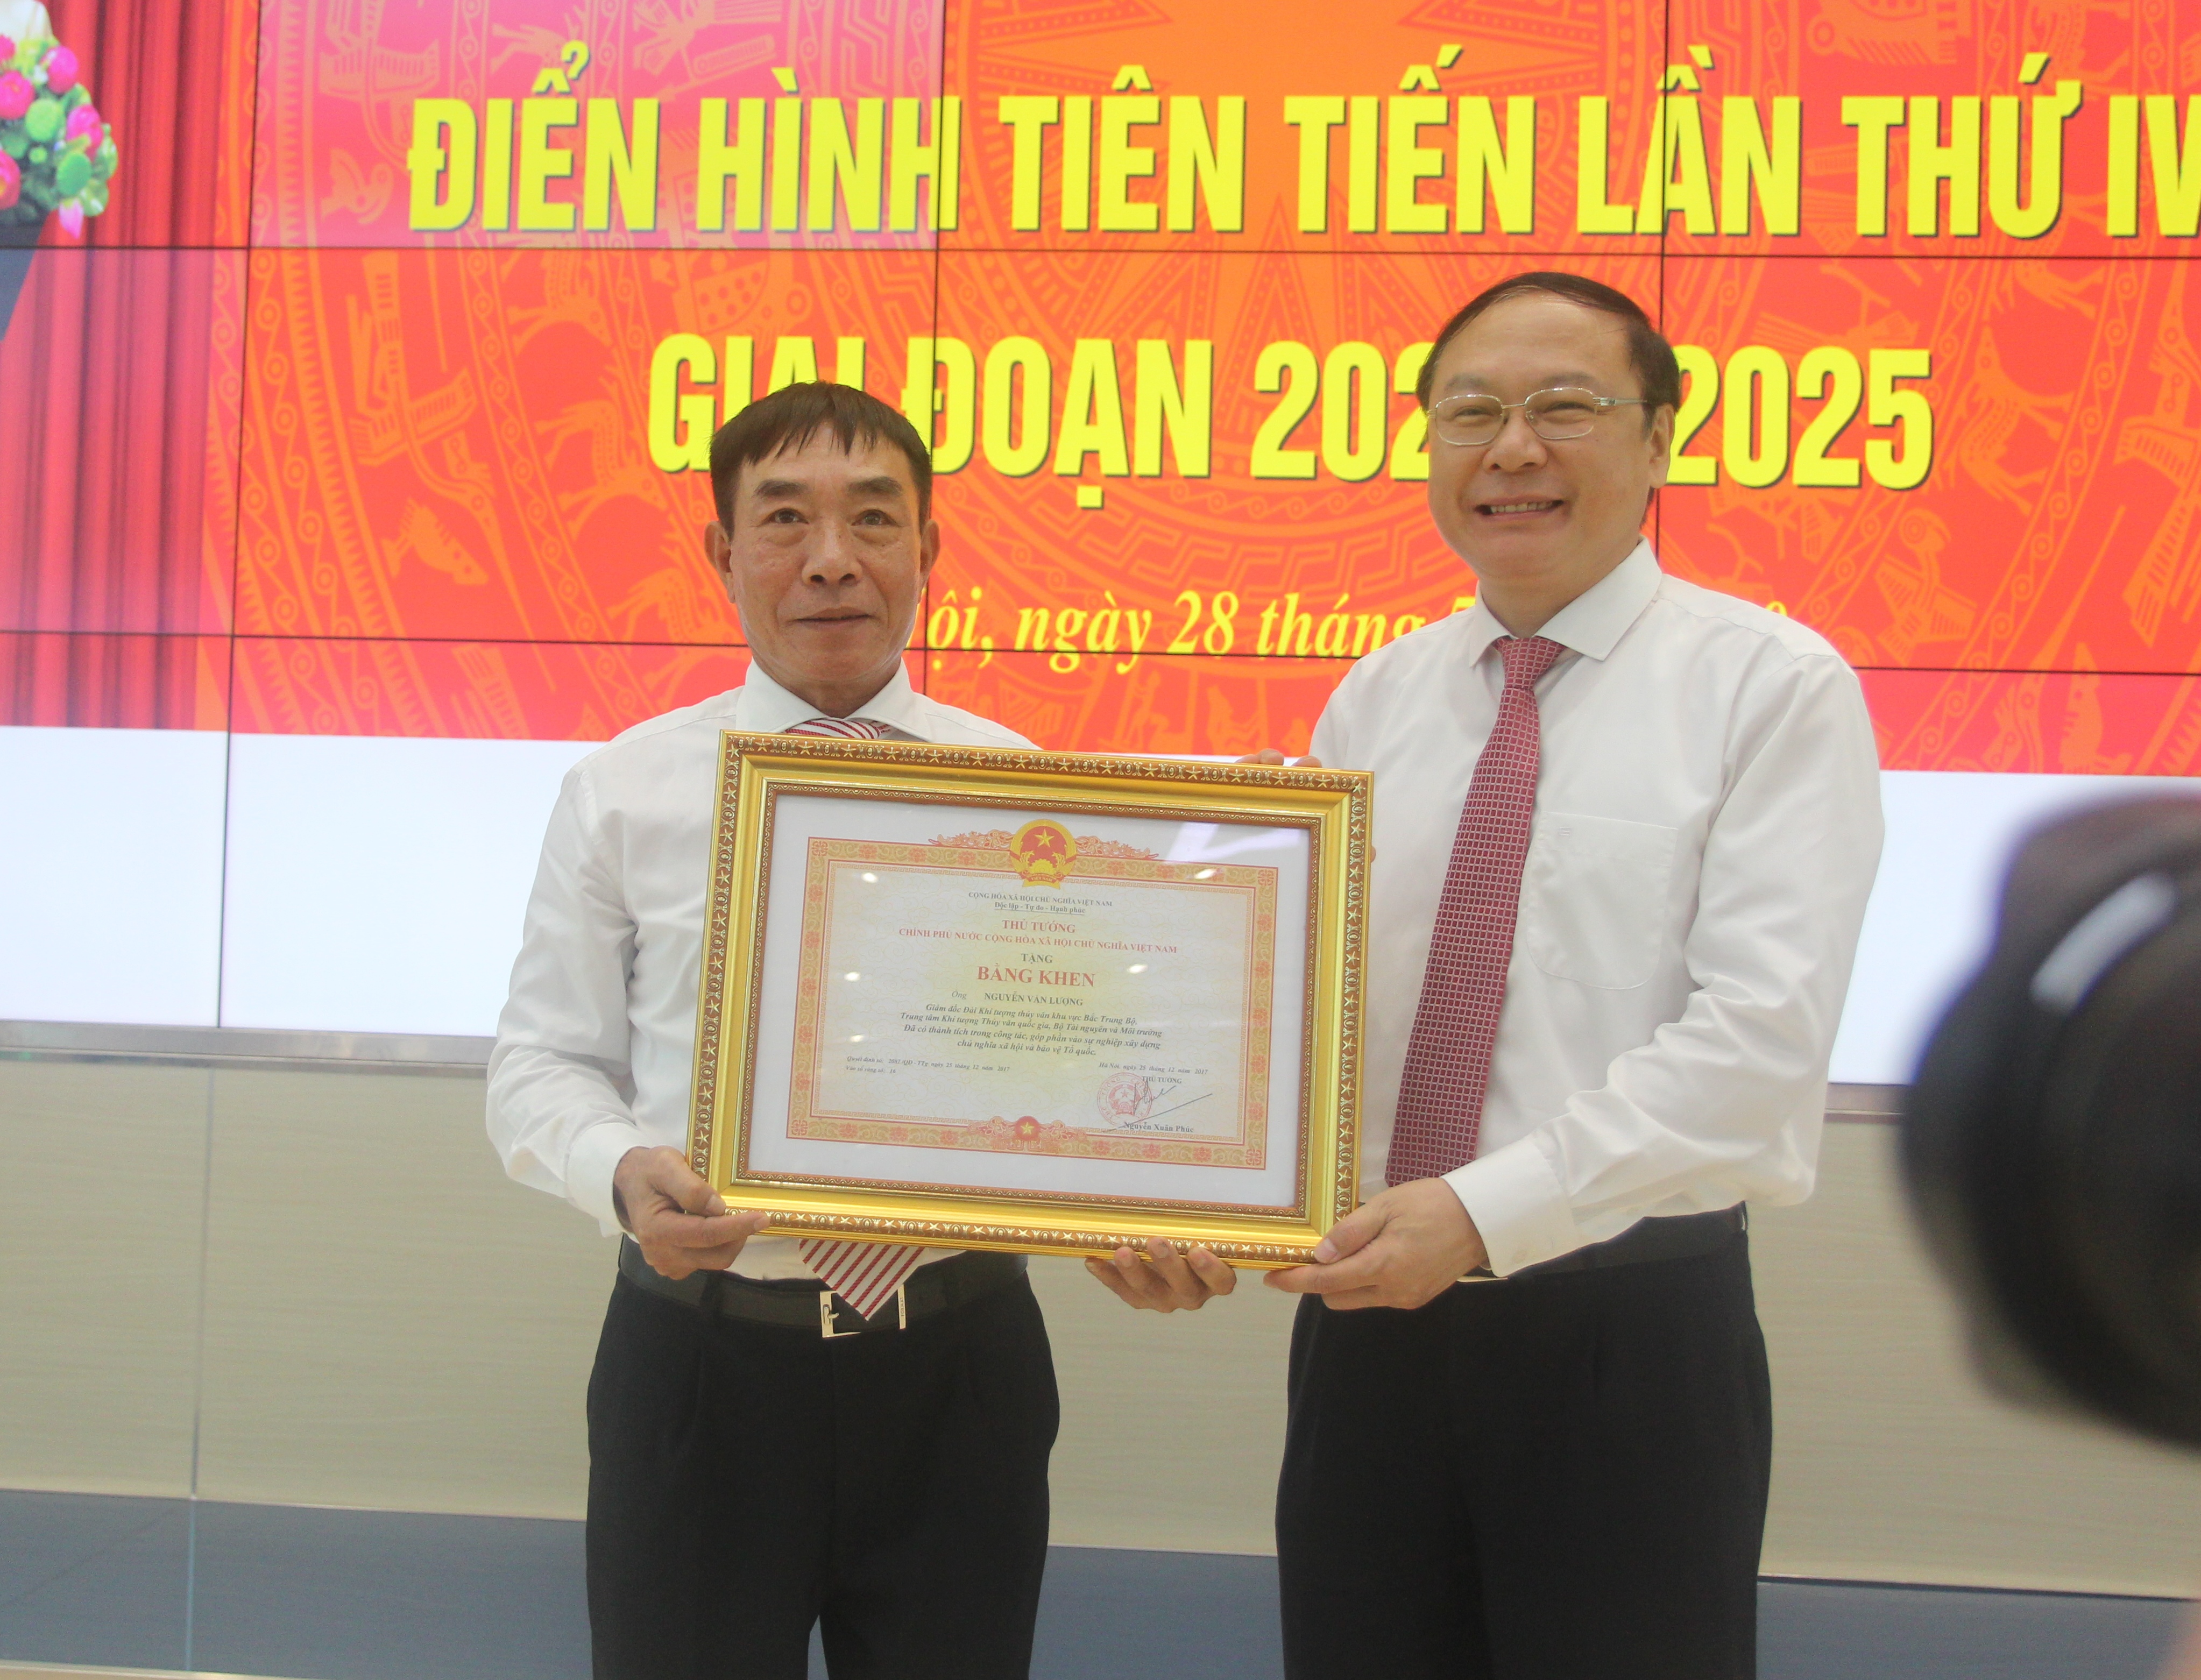 Bằng khen của Thủ tướng Chính phủ cho ông Nguyễn Văn Lượng – Giám đốc Đài KTTV khu vực Bắc Trung Bộ